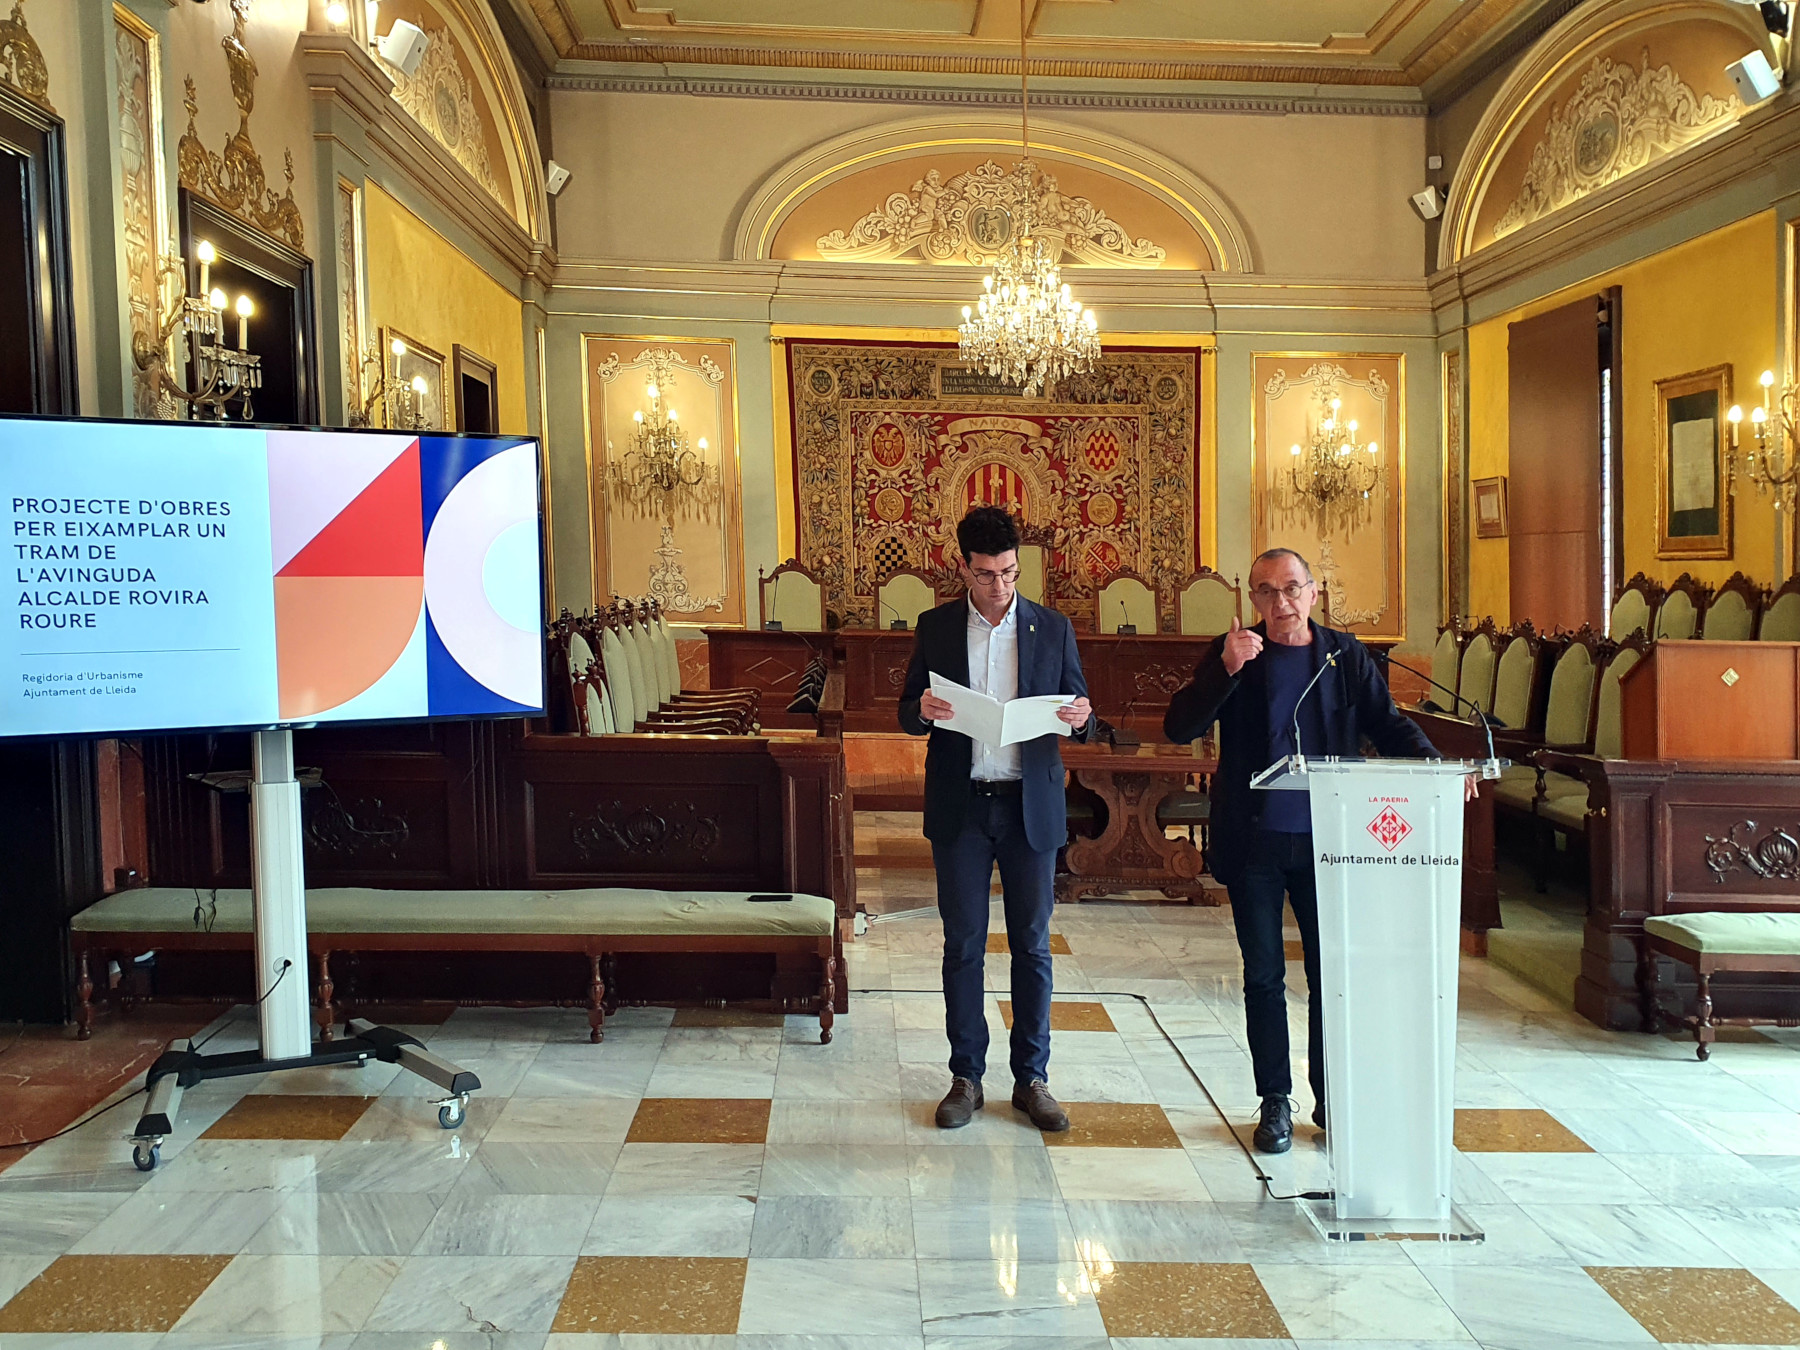 El paer en cap, Miquel Pueyo, i el primer tinent d'alcalde, Toni Postius, han presentat avui aquest projecte